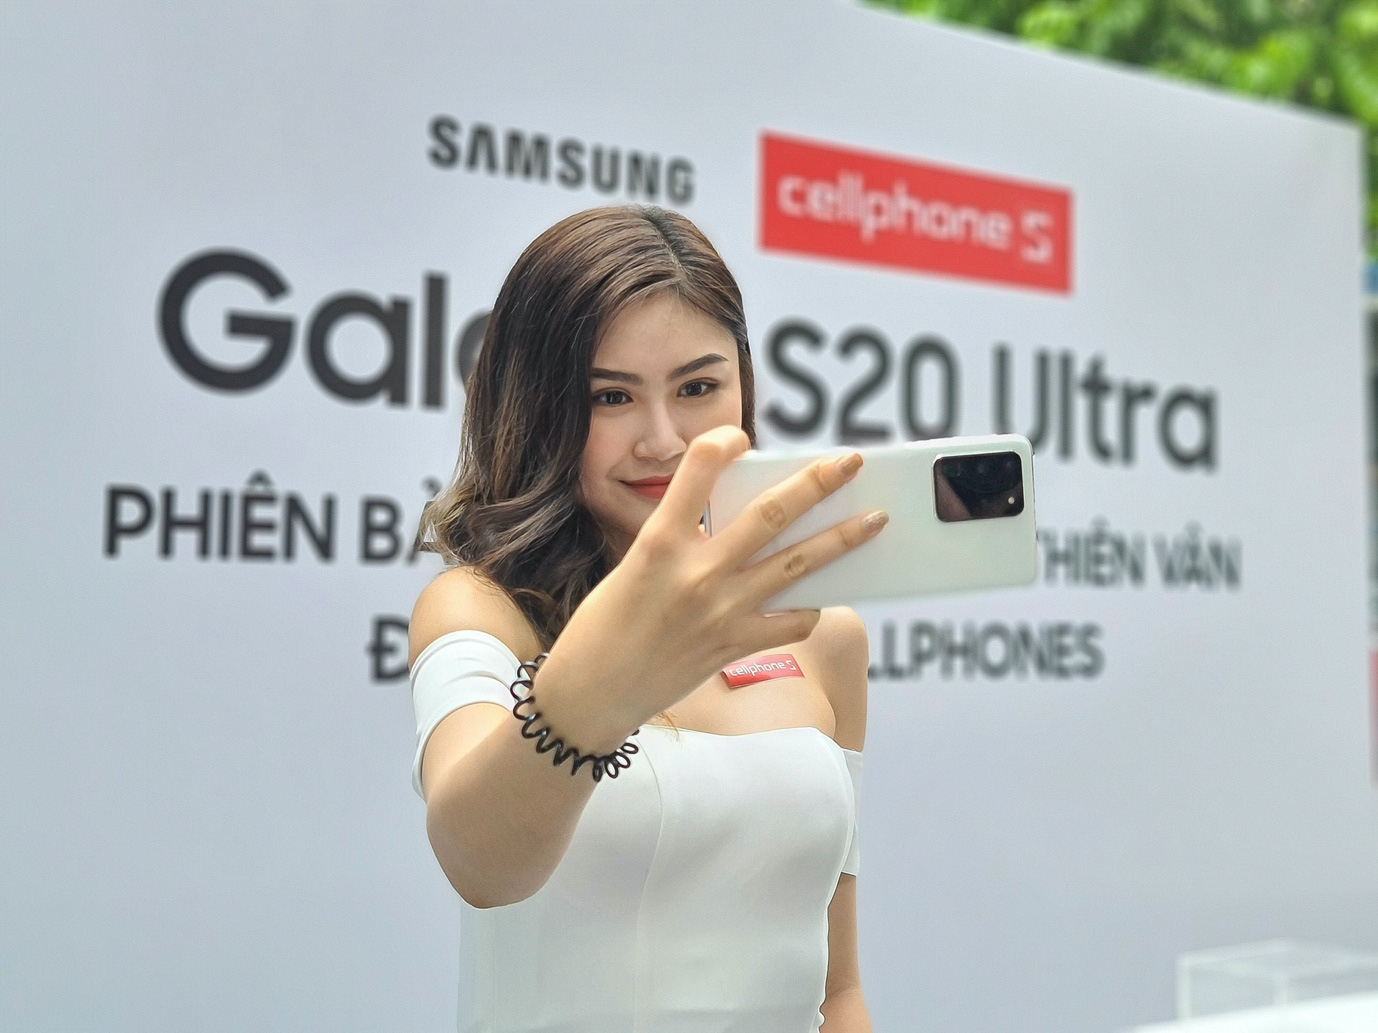 Galaxy S20 Ultra Trắng Thiên Vân mở bán tại Cellphones, “cháy” 1000 suất trong 3 ngày - Ảnh 6.